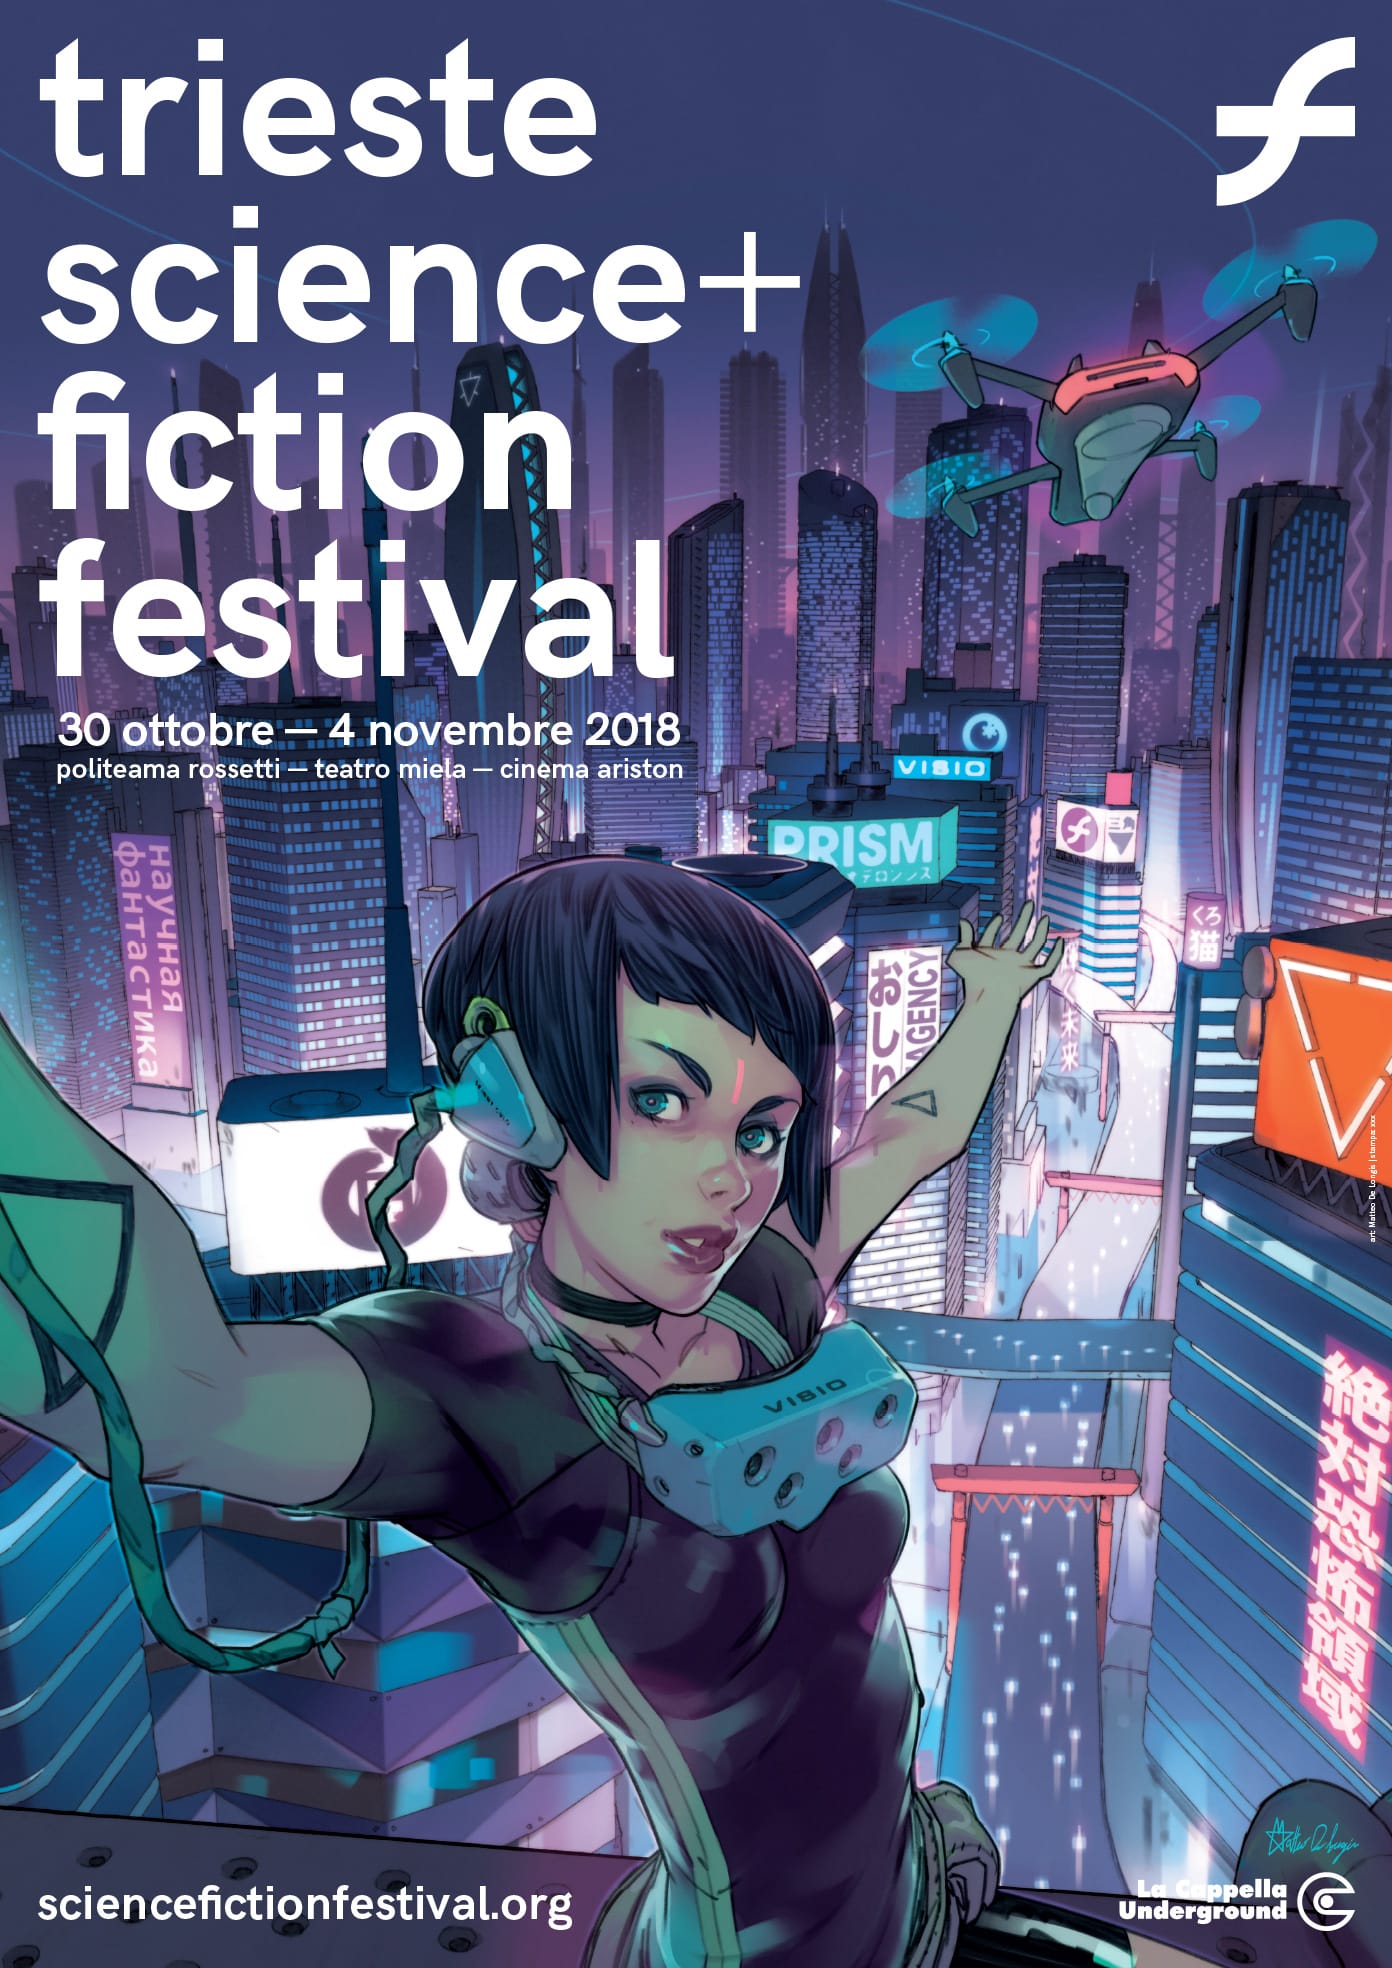 Trieste Science+Fiction Festival 2018 poster Cienmatographe.it